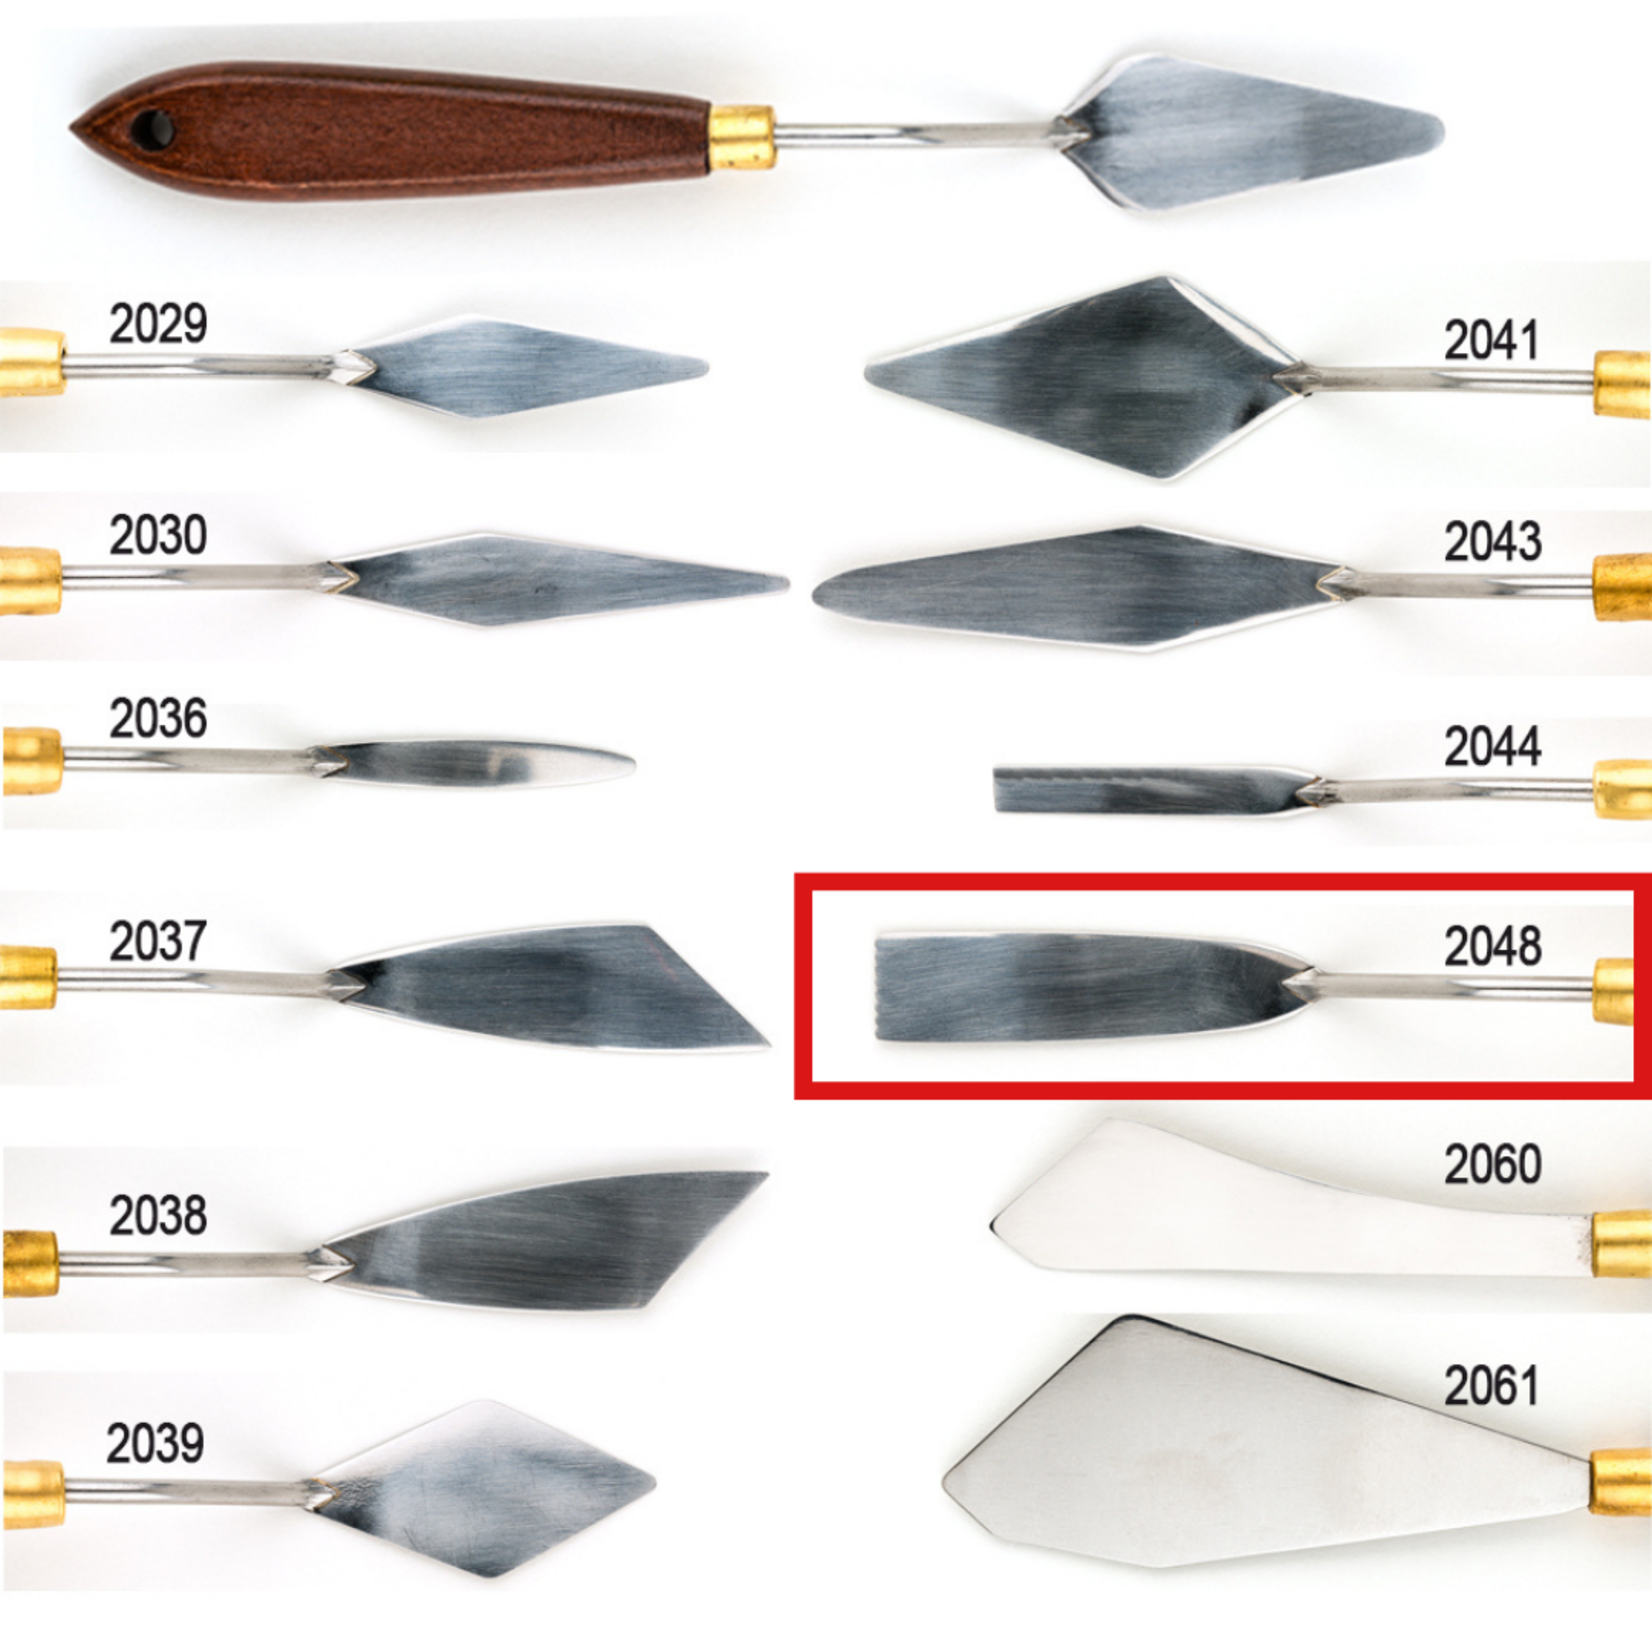 DEMCO DEMCO ART PRO PALETTE KNIFE 2048